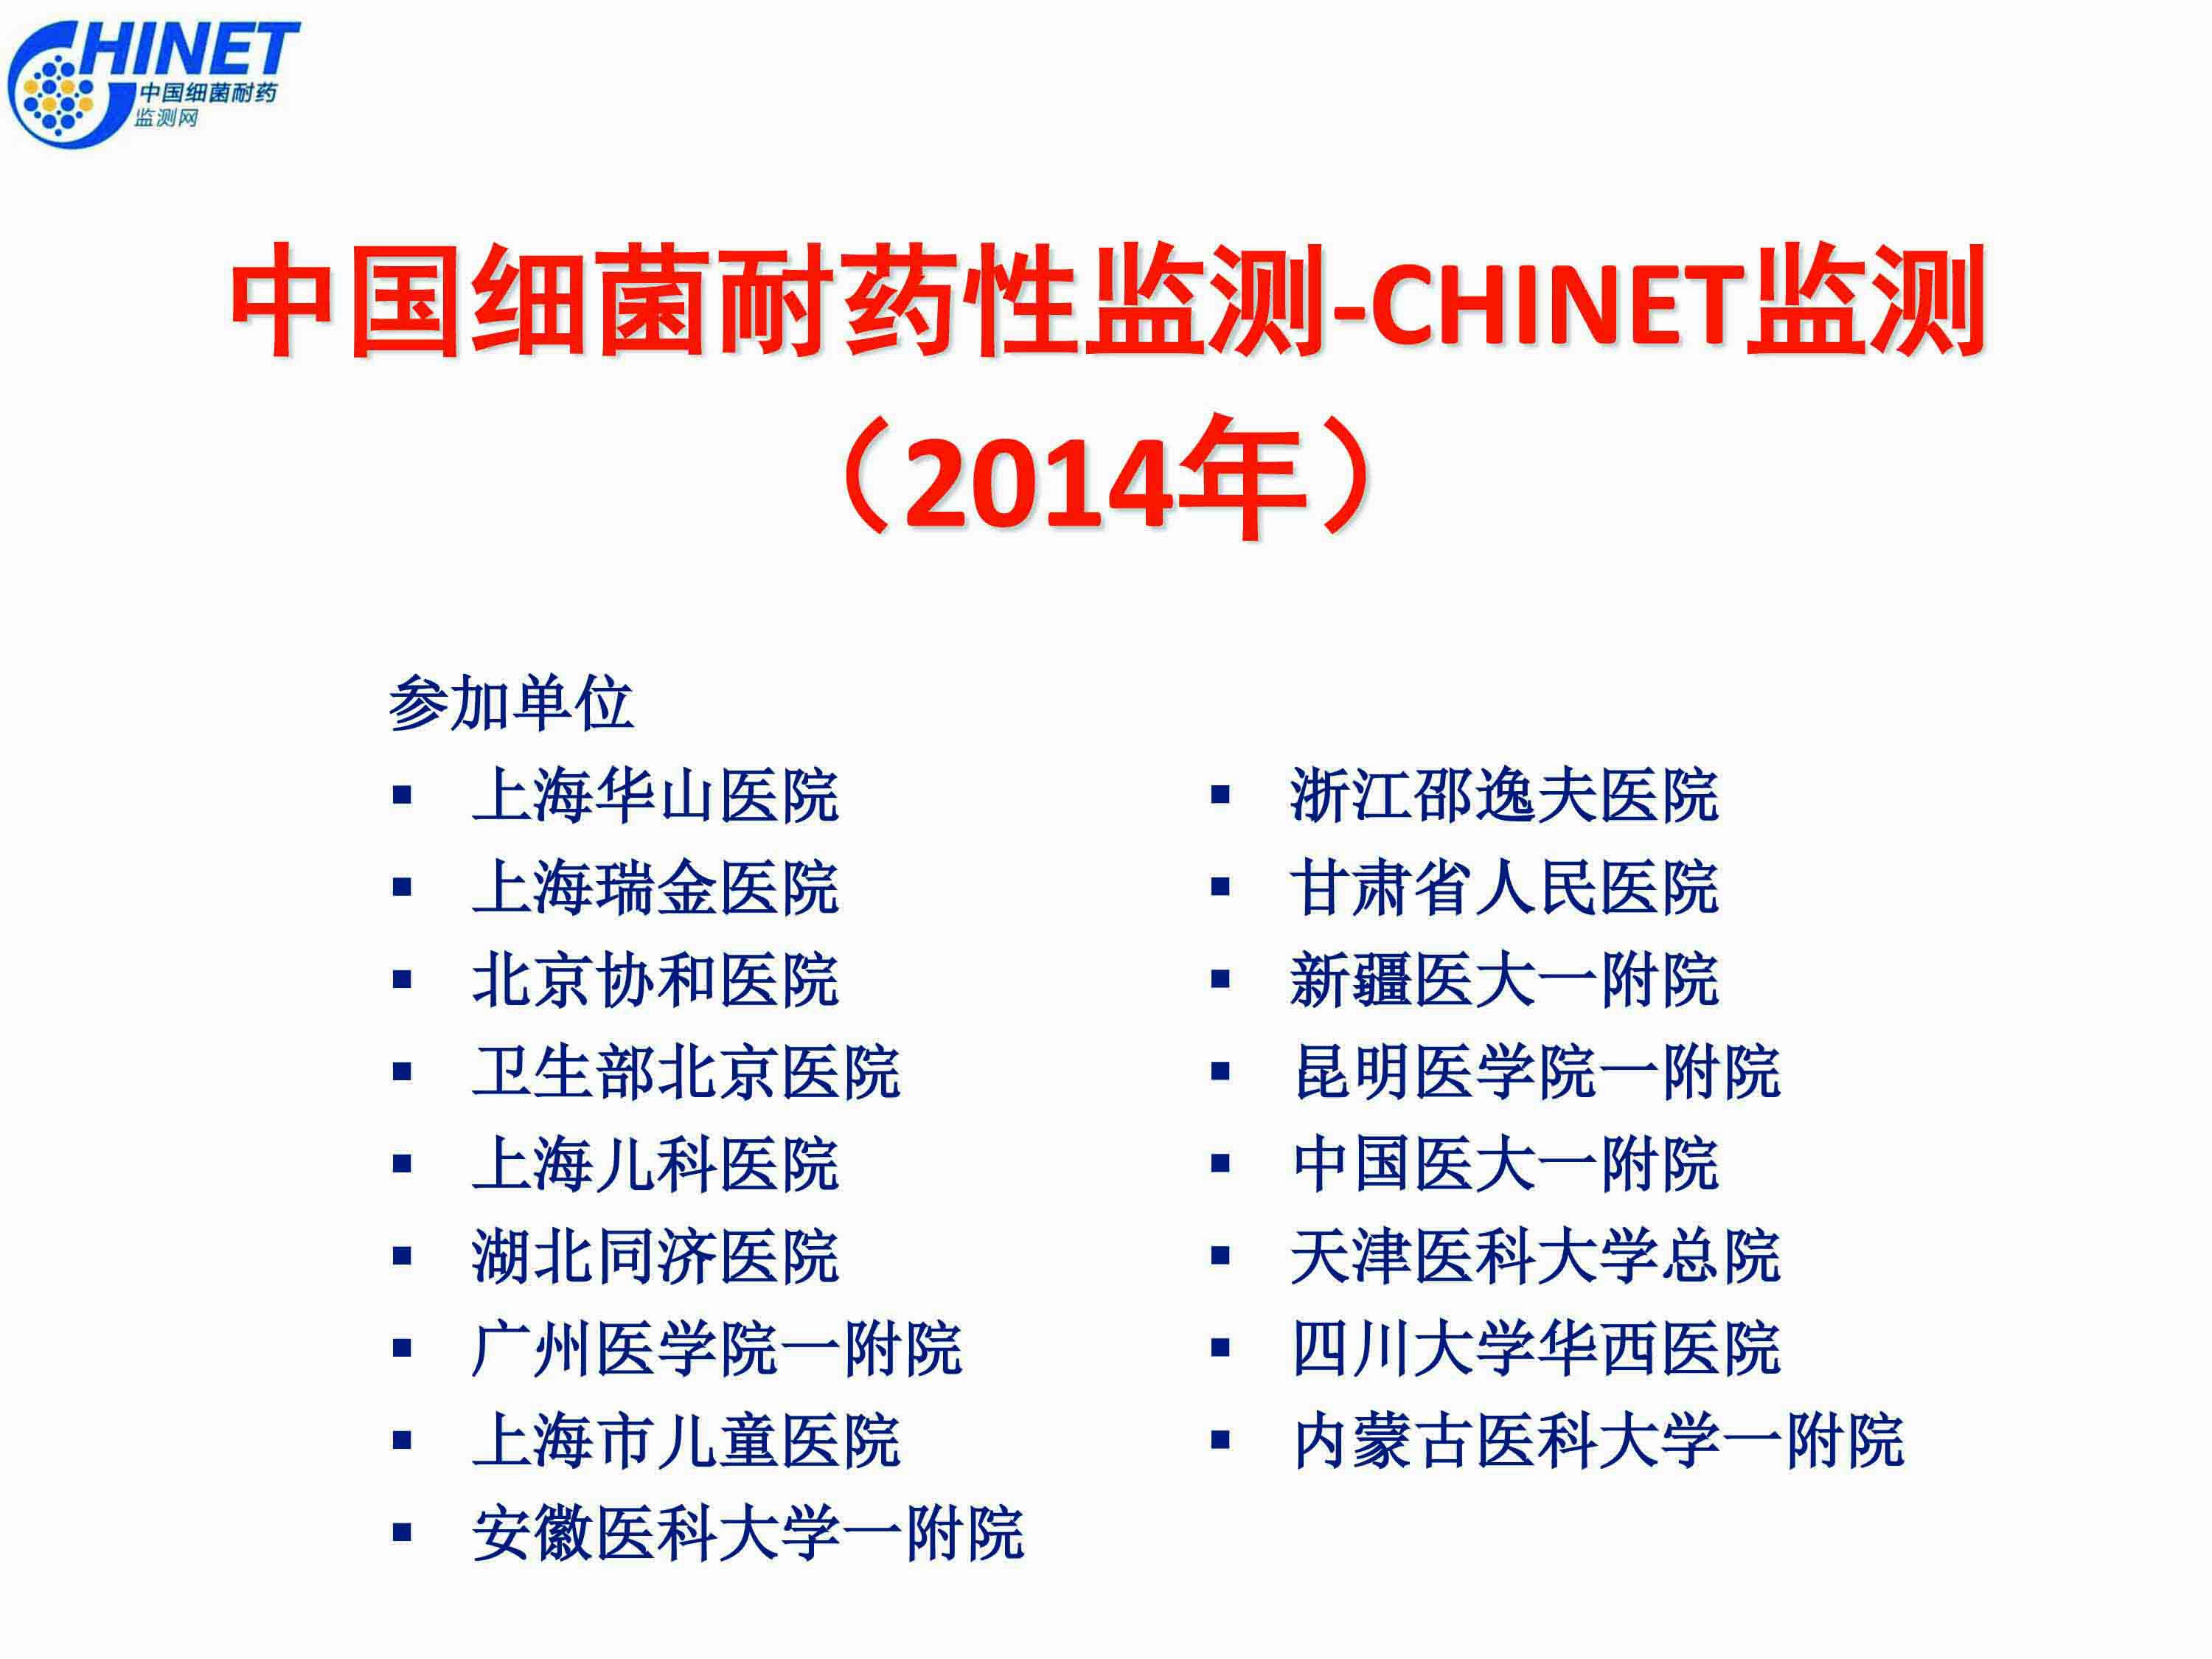 CHINET2014全年耐药监测统计结果(全年)01-1.jpg